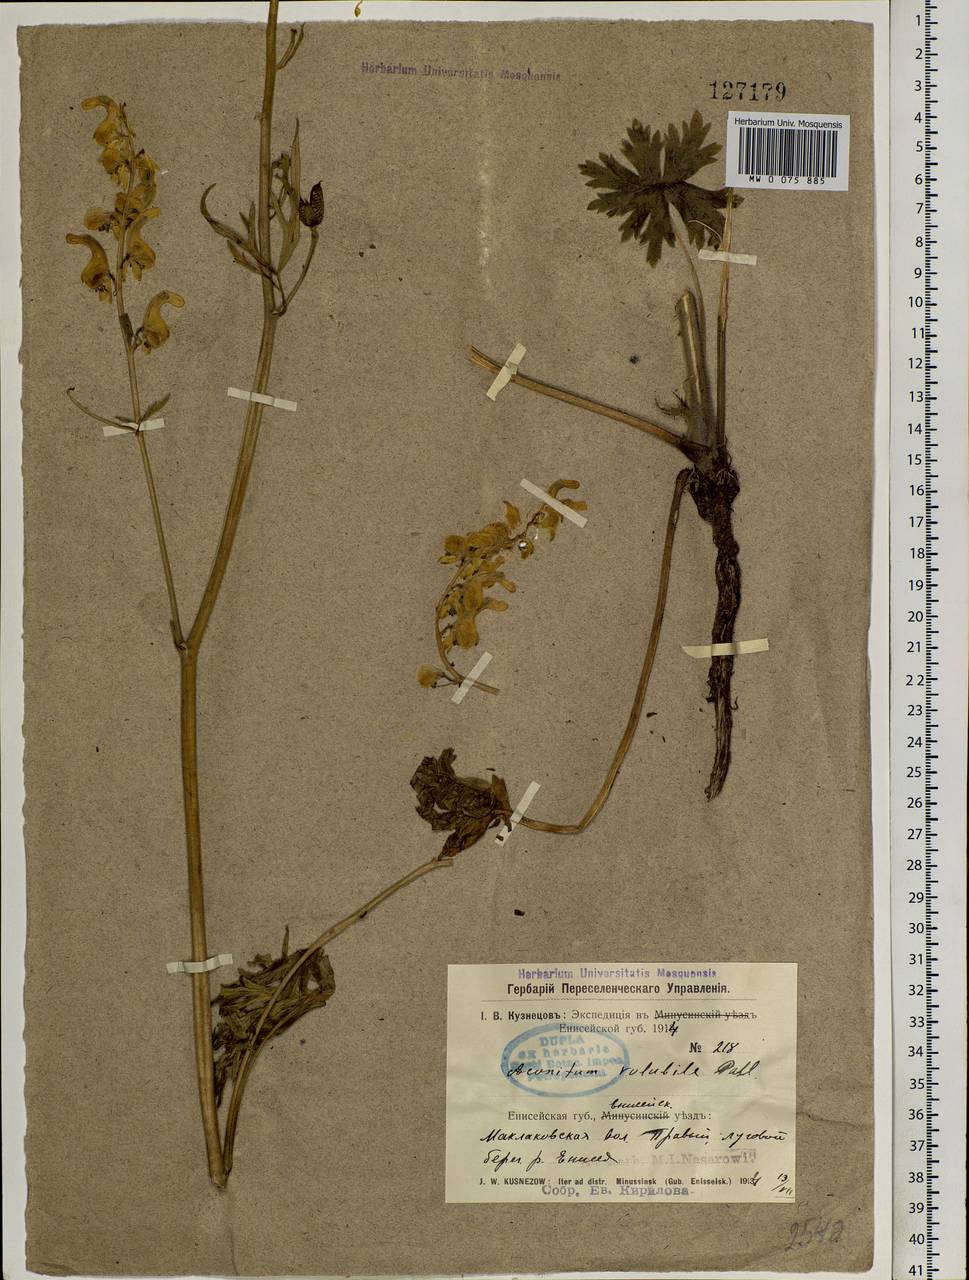 Aconitum barbatum Pers., Siberia, Central Siberia (S3) (Russia)